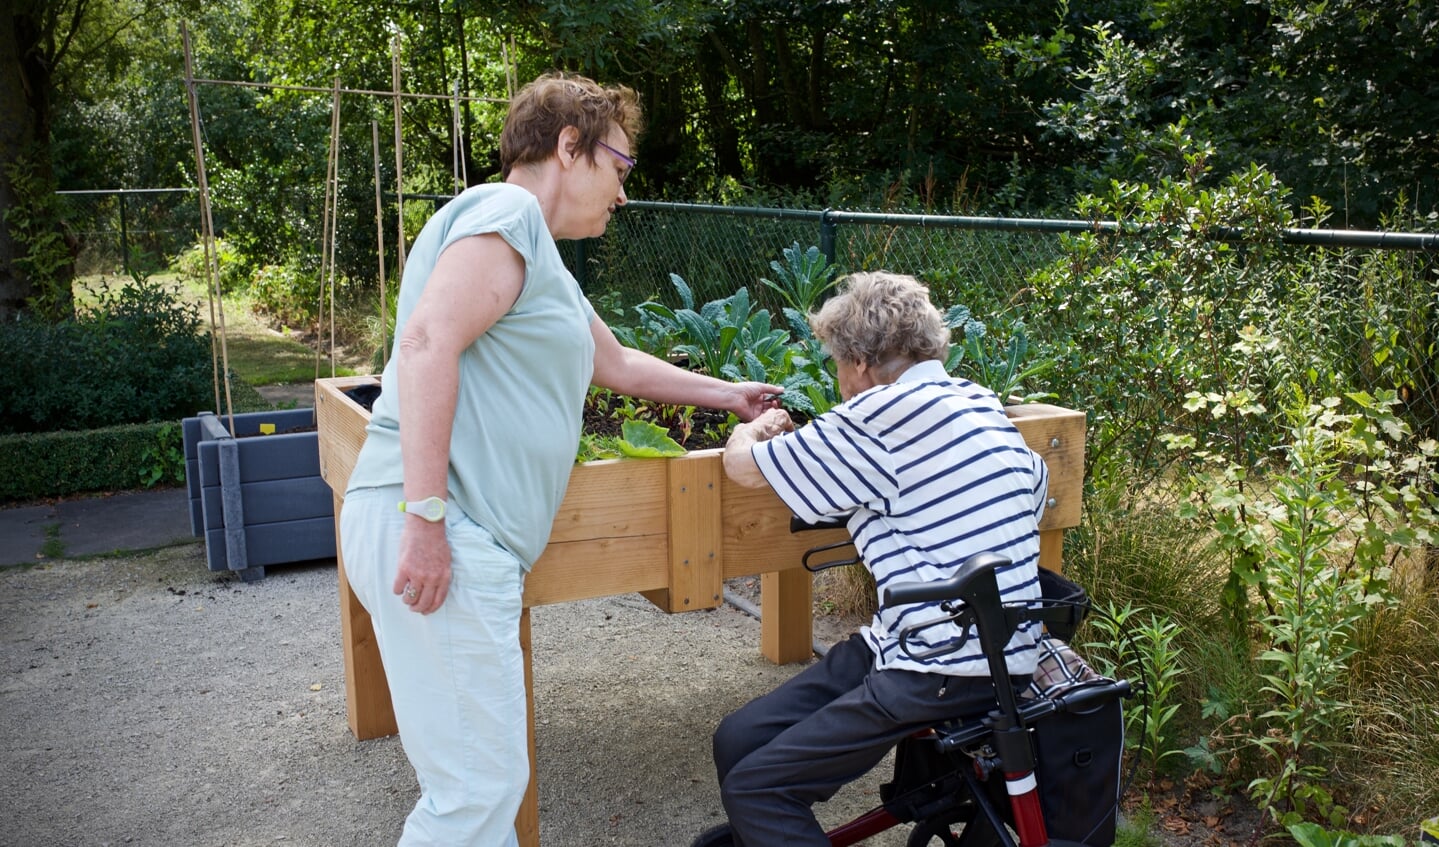 Vrijwilligers nemen ouderen mee de tuin in om samen te tuinieren.